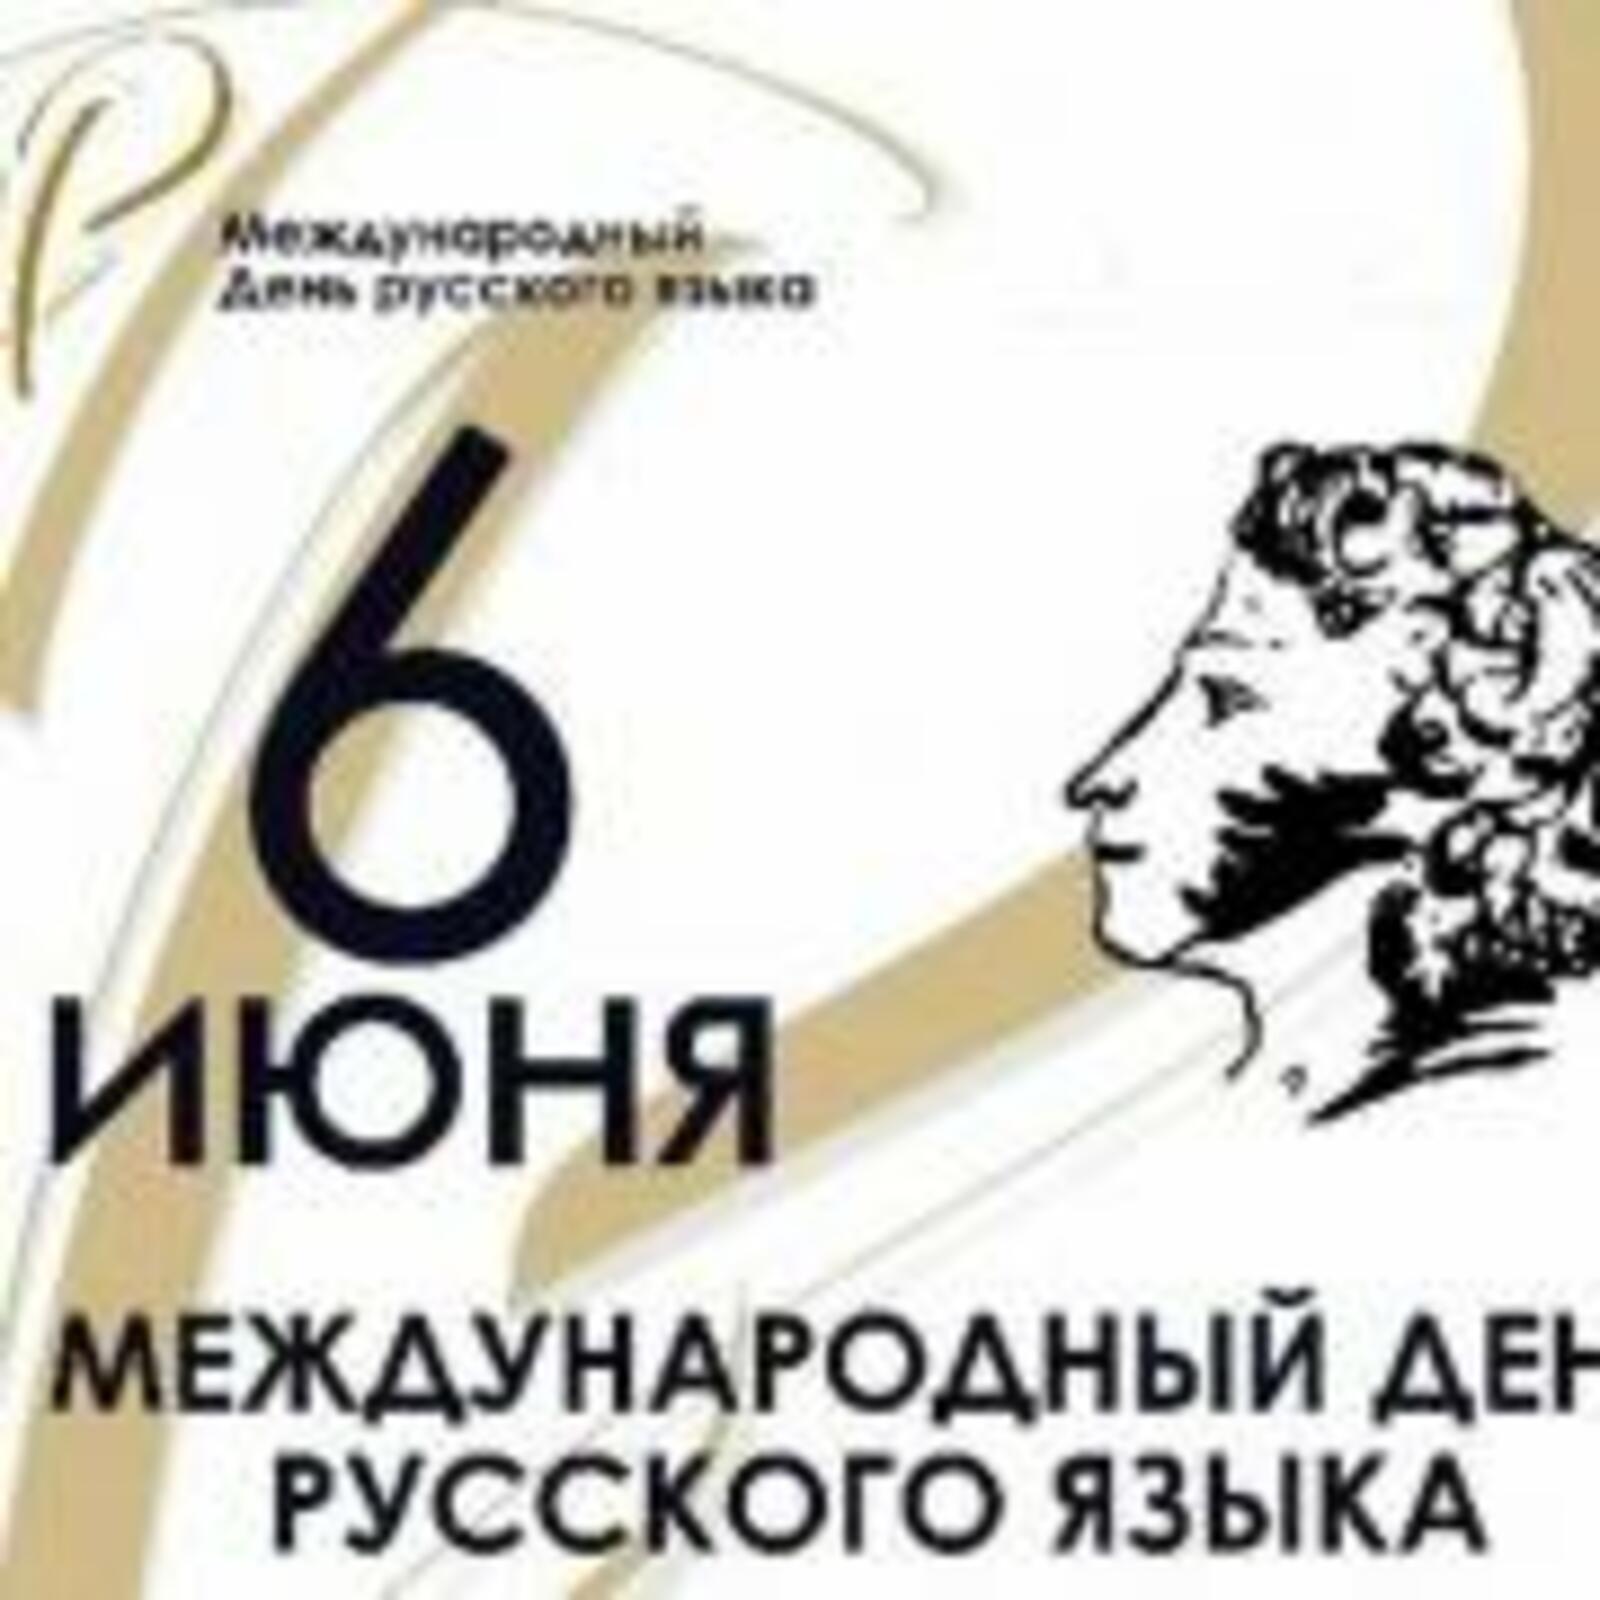 Сегодня, 6 июня,  отмечается день рождения классика русской литературы  Александра Пушкина